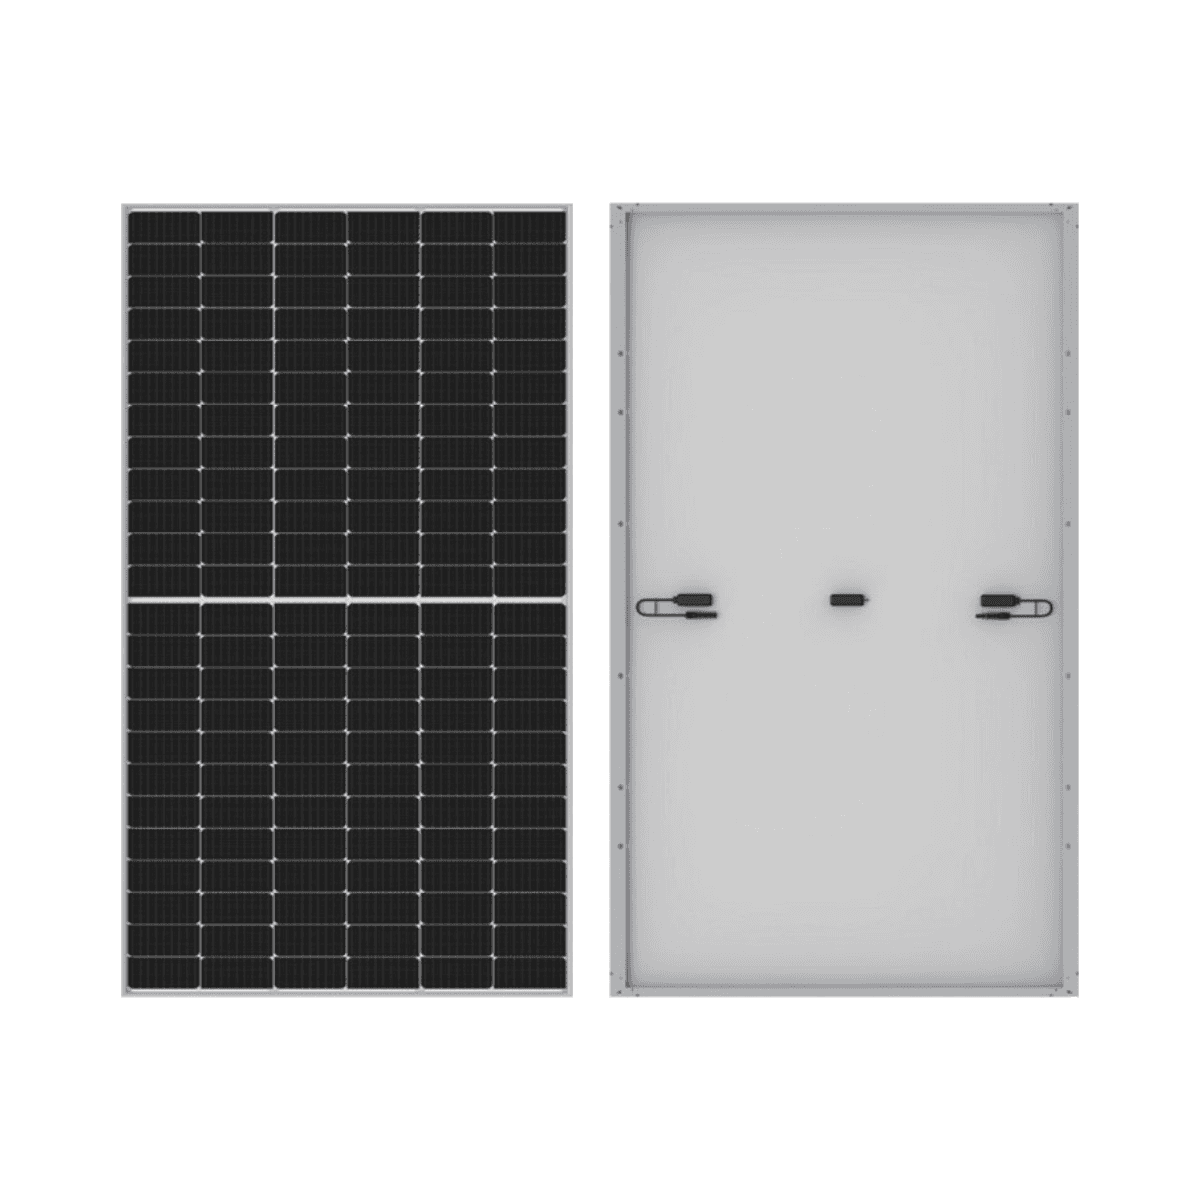 Pack 31 Solarmodul 555W Longi HI-MO5m LR5-72HPH-555M mit der Referenz LR5-72HPH 555WP von der Marke LONGI